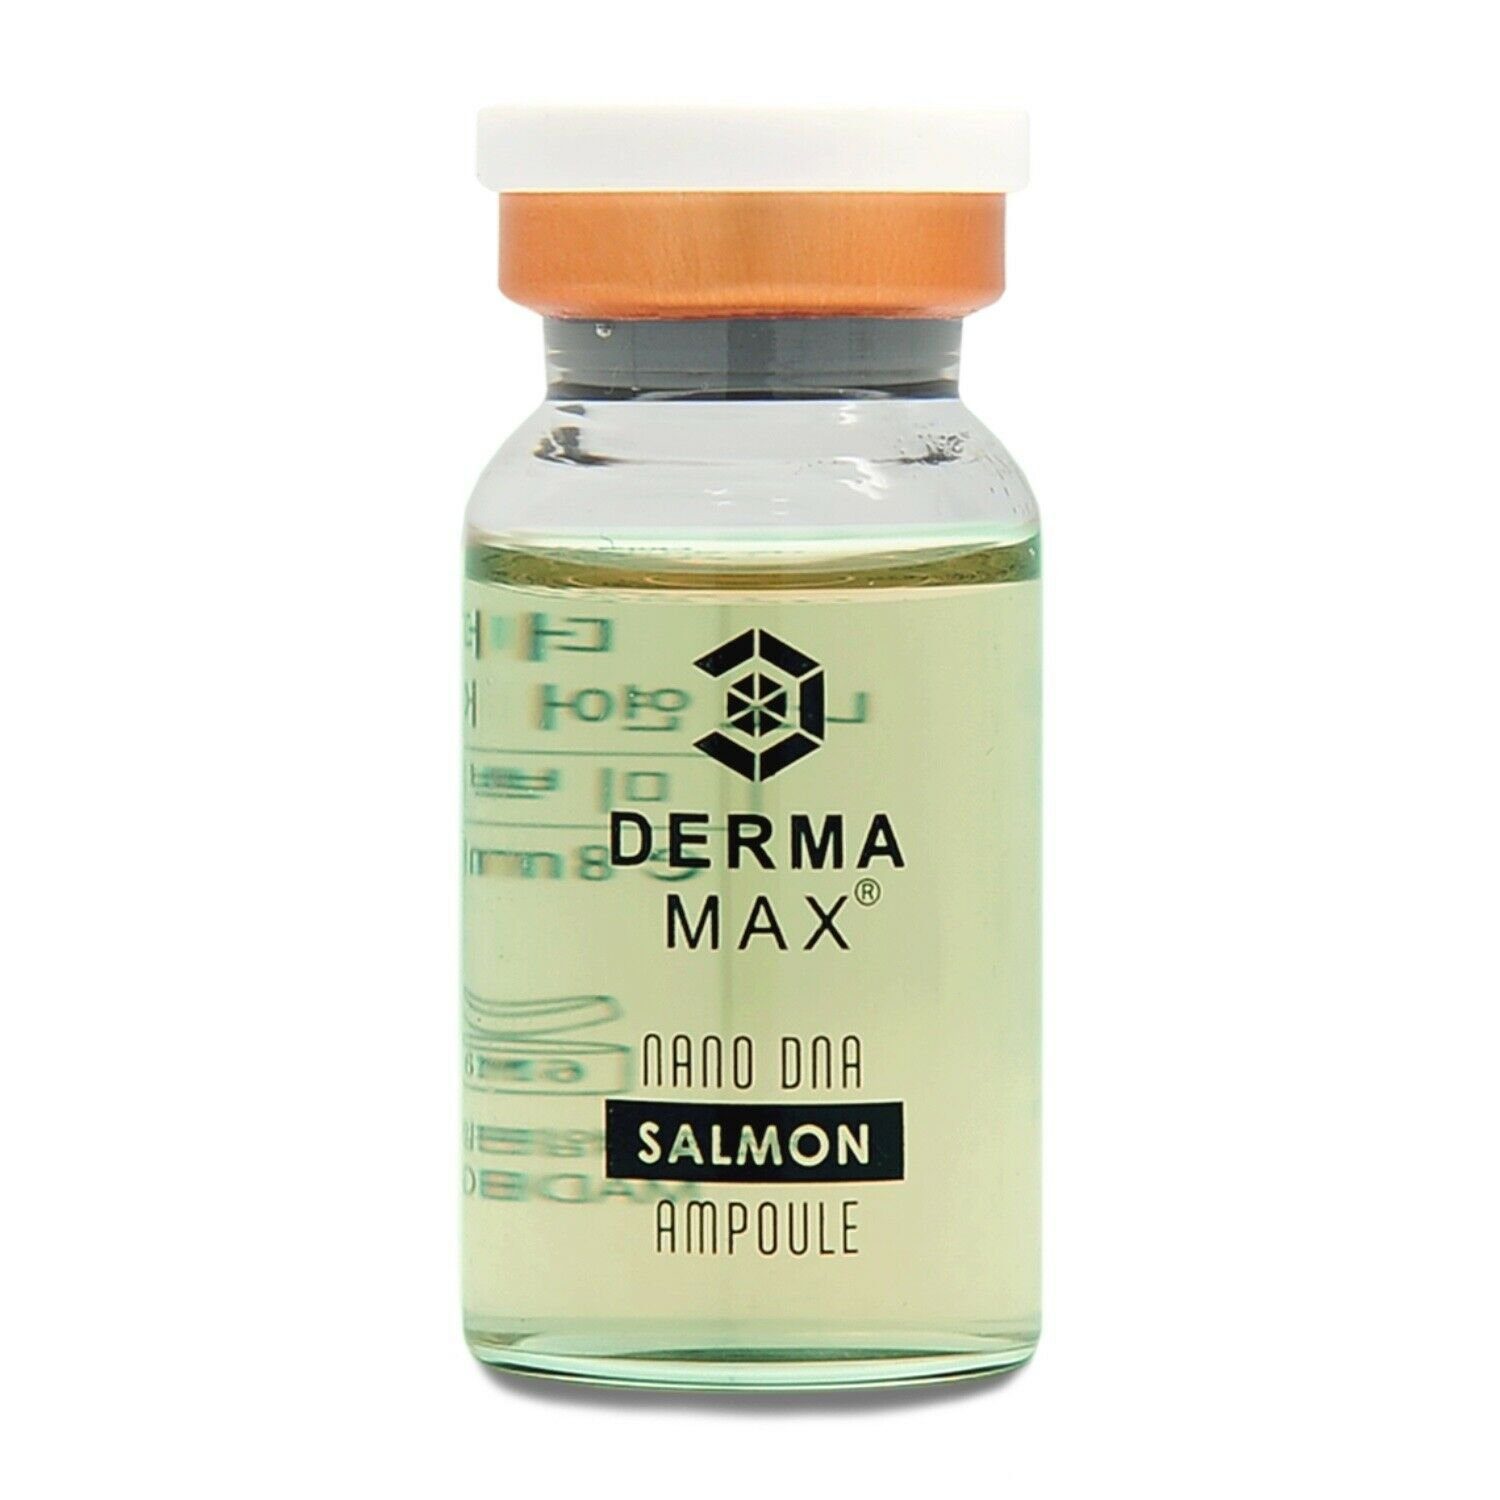 Premium SALMON Serum 8ml DERMAMAX Gesichtsserum Microneedling Problemhaut für oder speziell mit MTS Dermamax Dermaroller, Dermapen für Ideal Ampulle Booster Treatment